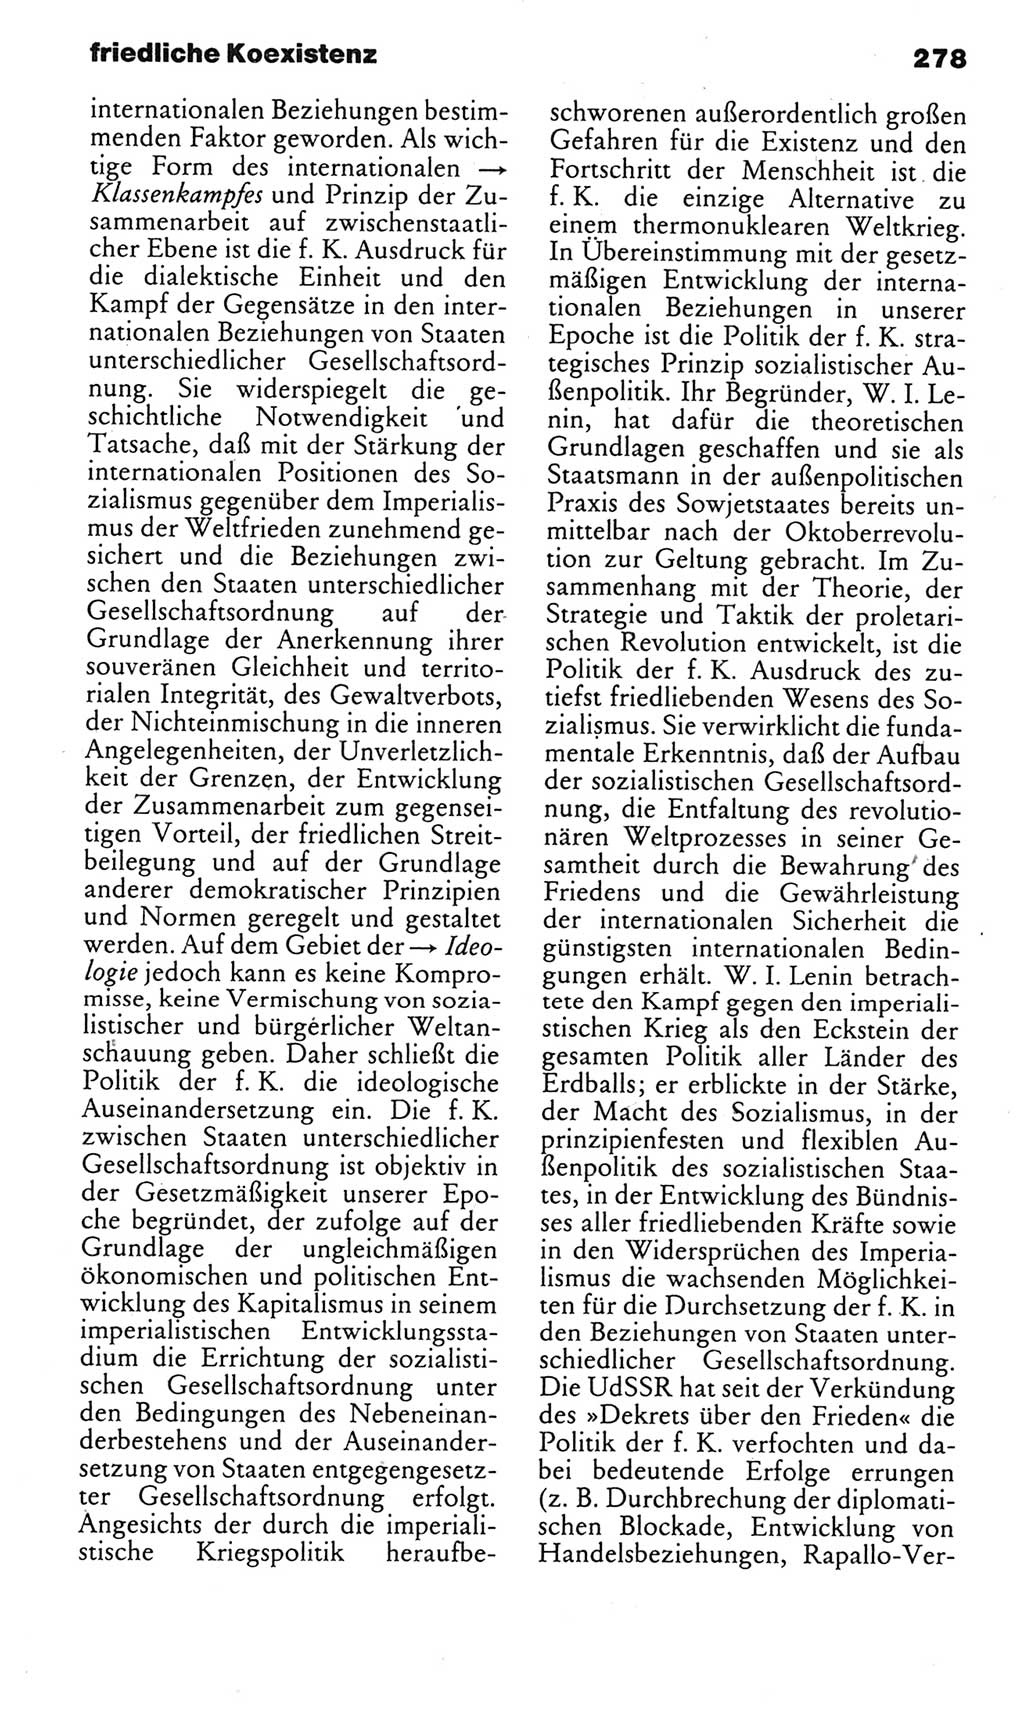 Kleines politisches Wörterbuch [Deutsche Demokratische Republik (DDR)] 1985, Seite 278 (Kl. pol. Wb. DDR 1985, S. 278)